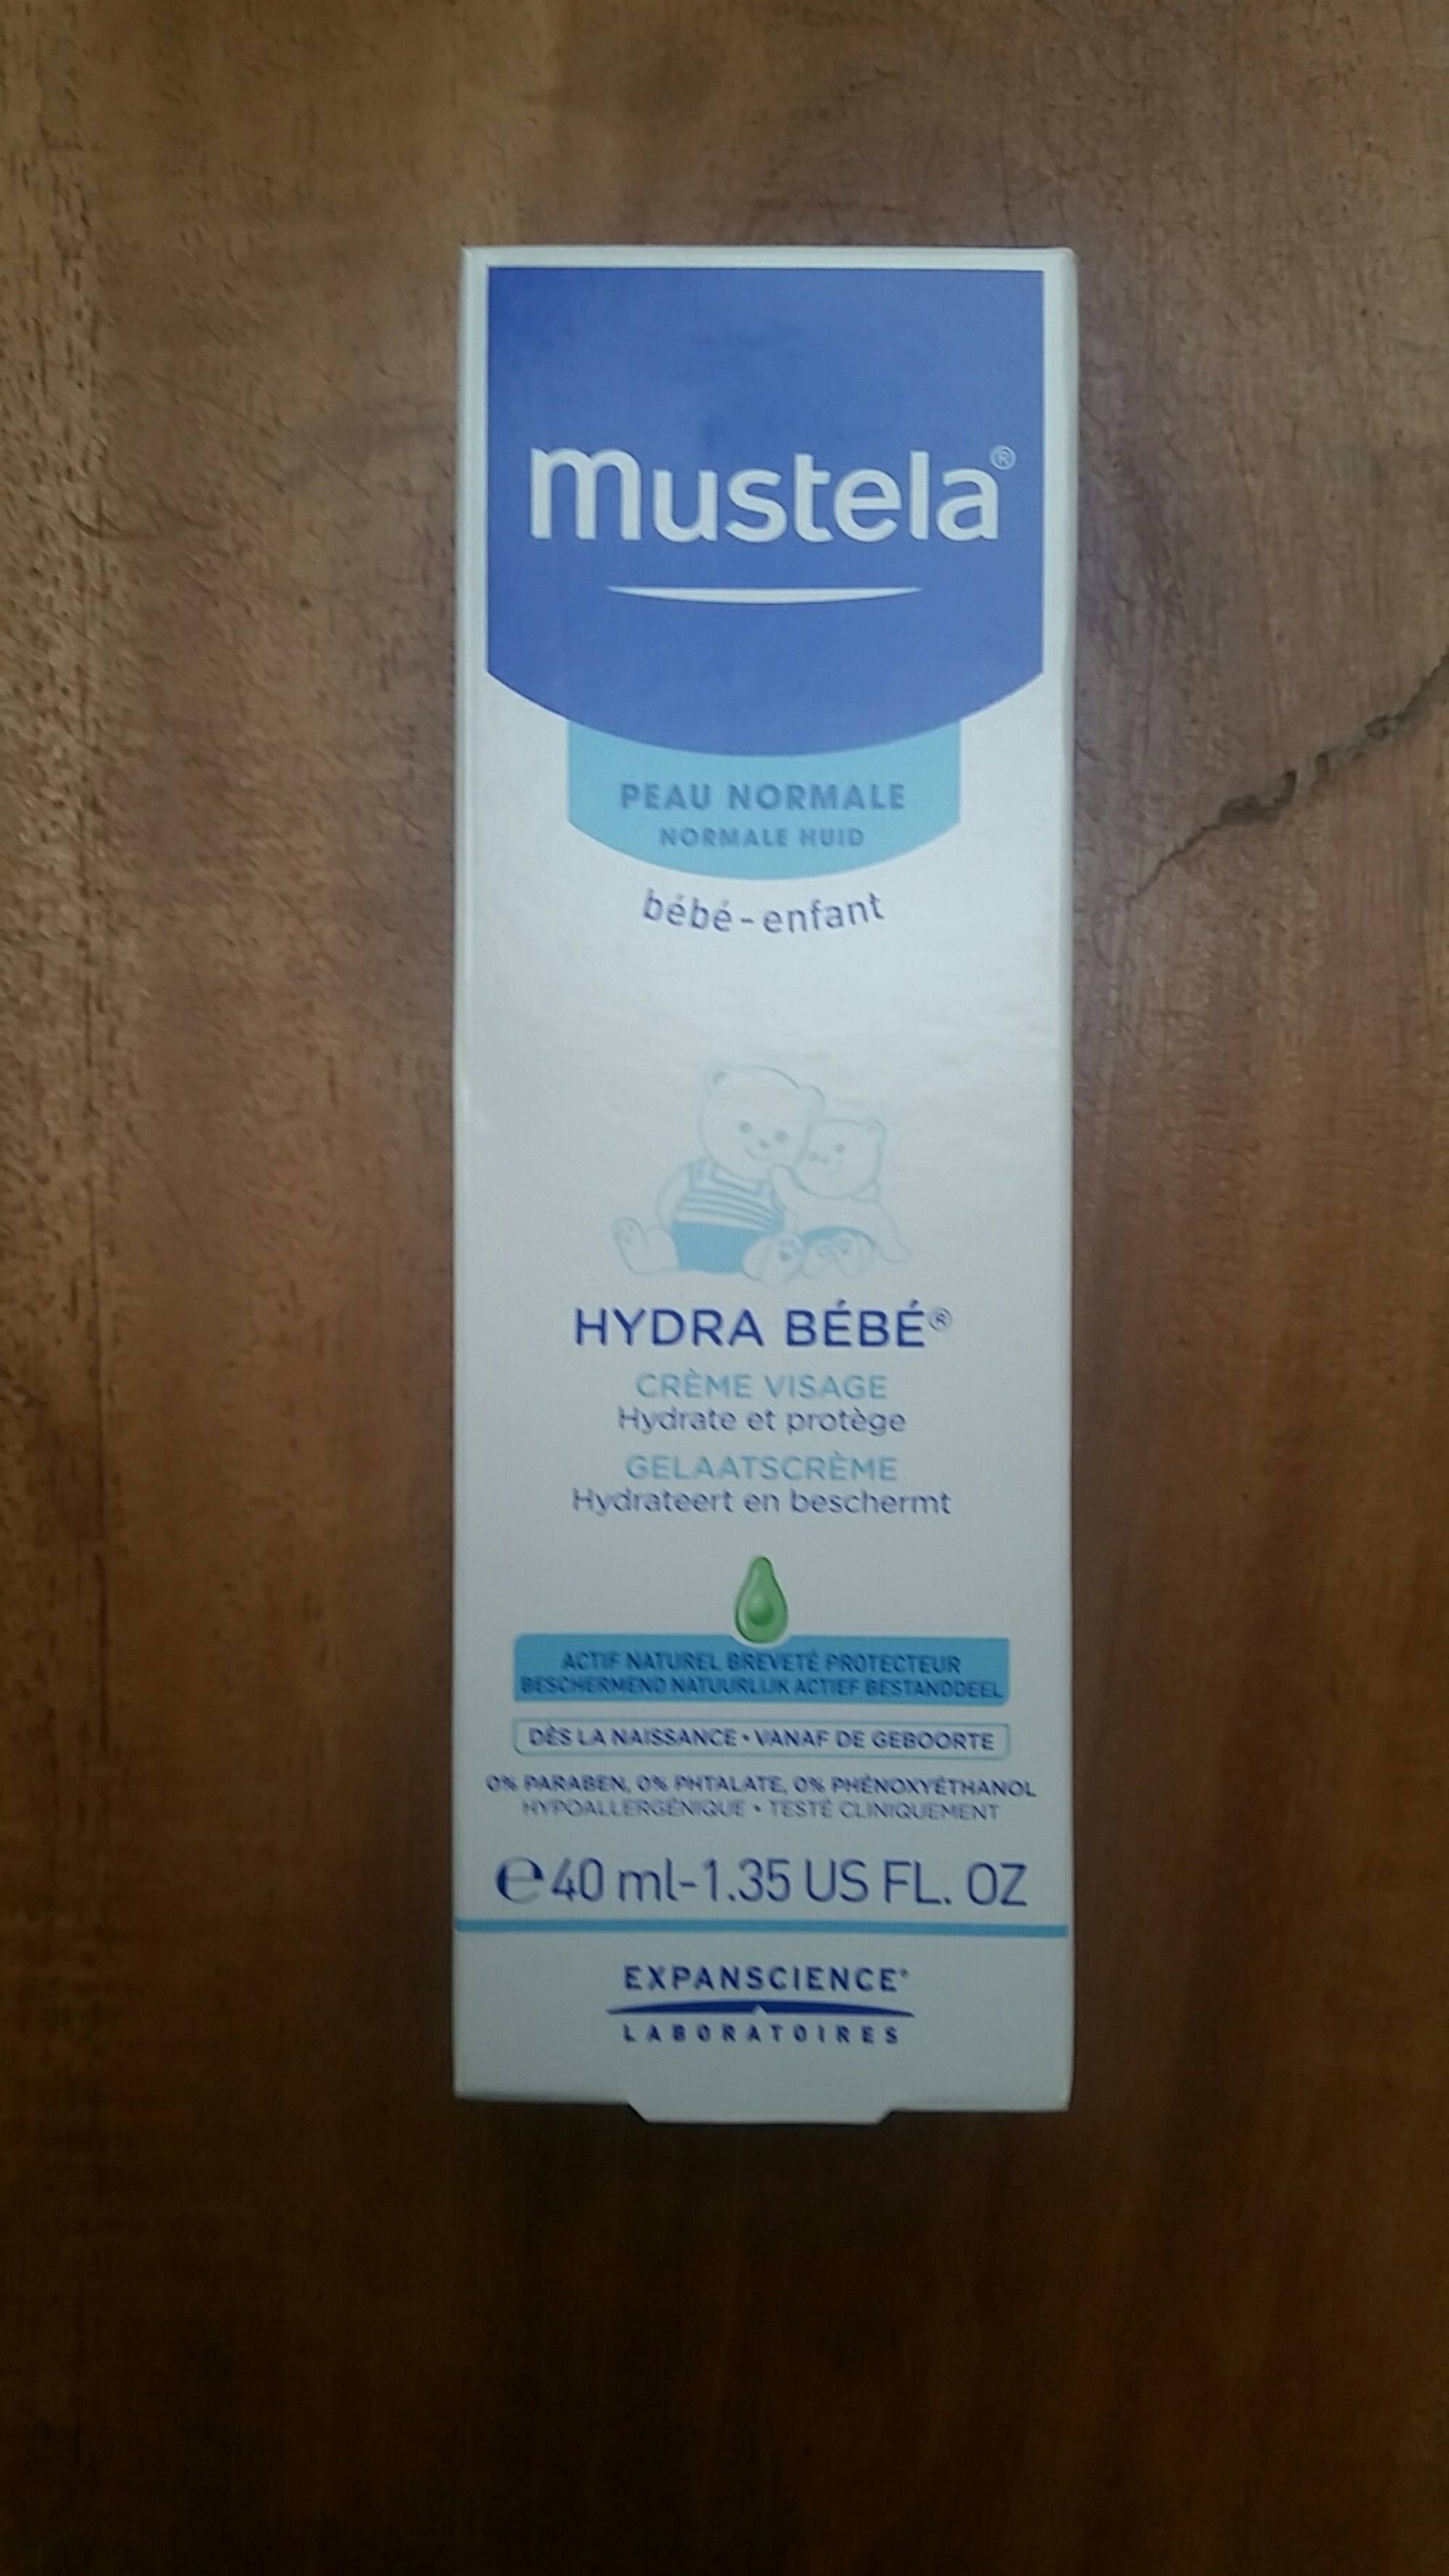 Hydra Bébé Crème visage MUSTELA : Comparateur, Avis, Prix